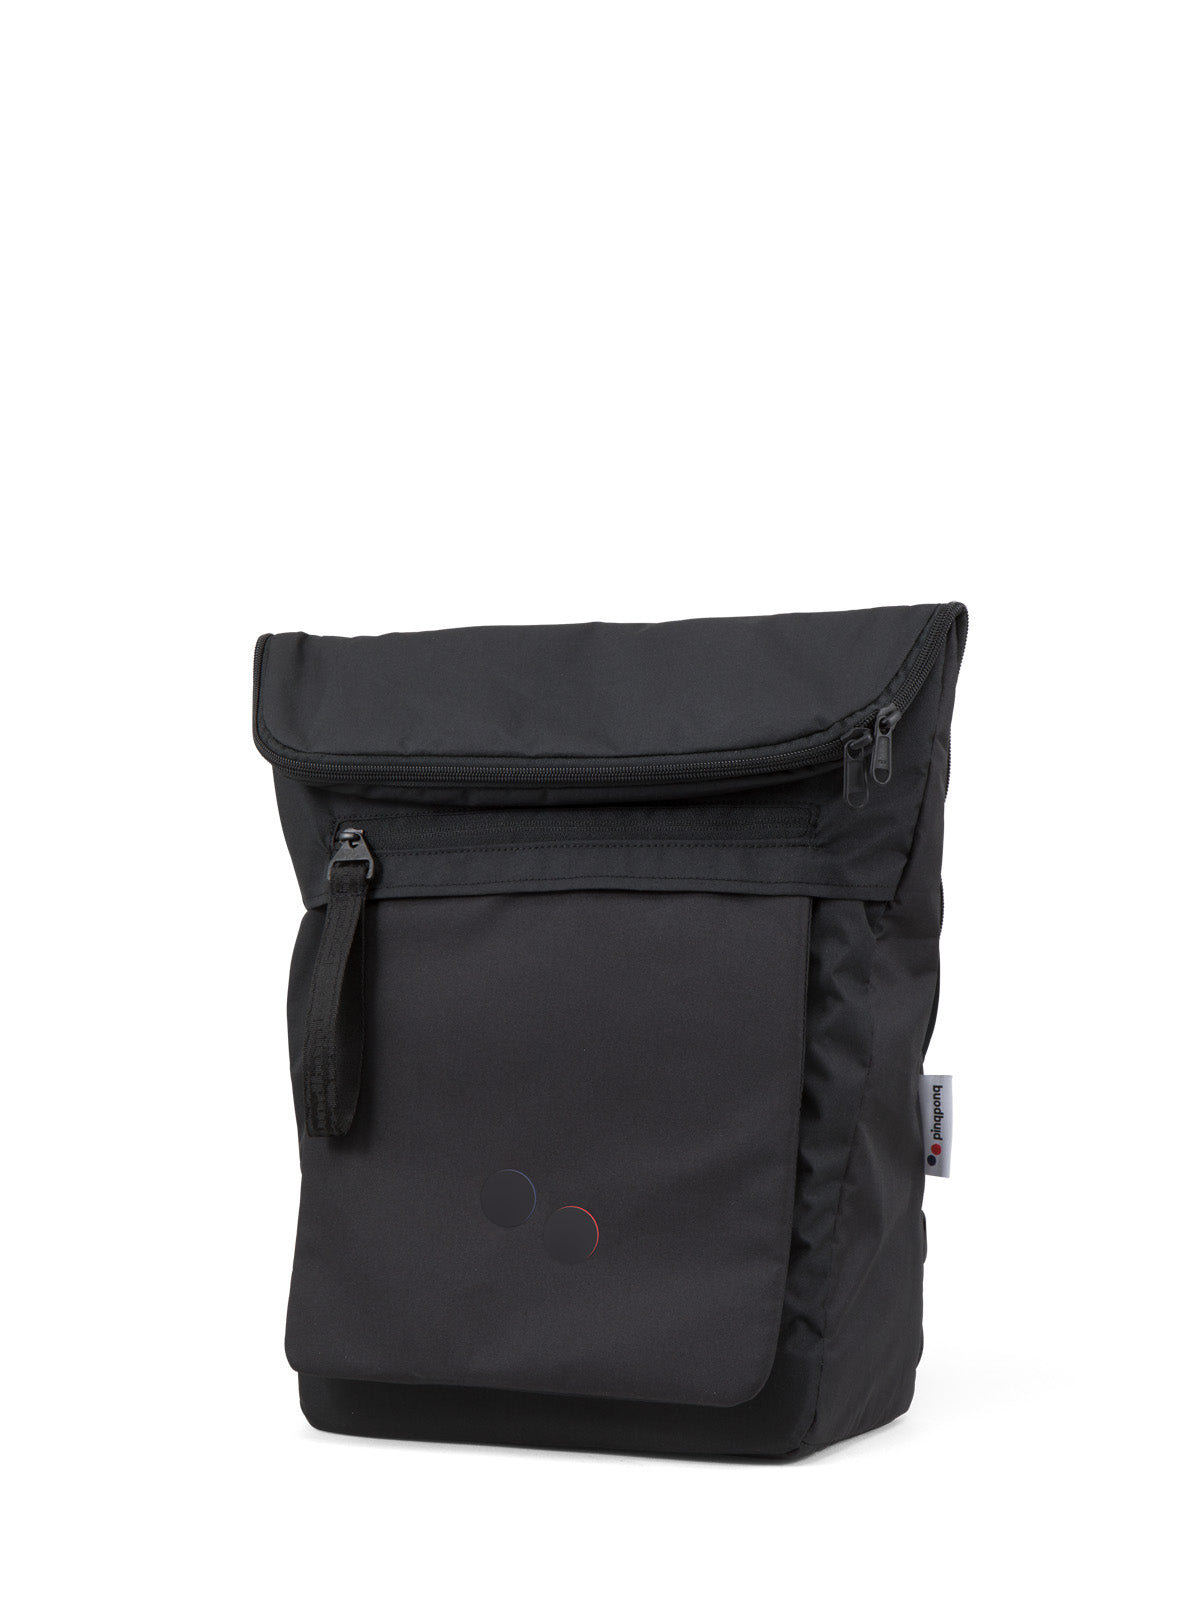 
                  
                    KLAK Rooted Black Backpack
                  
                